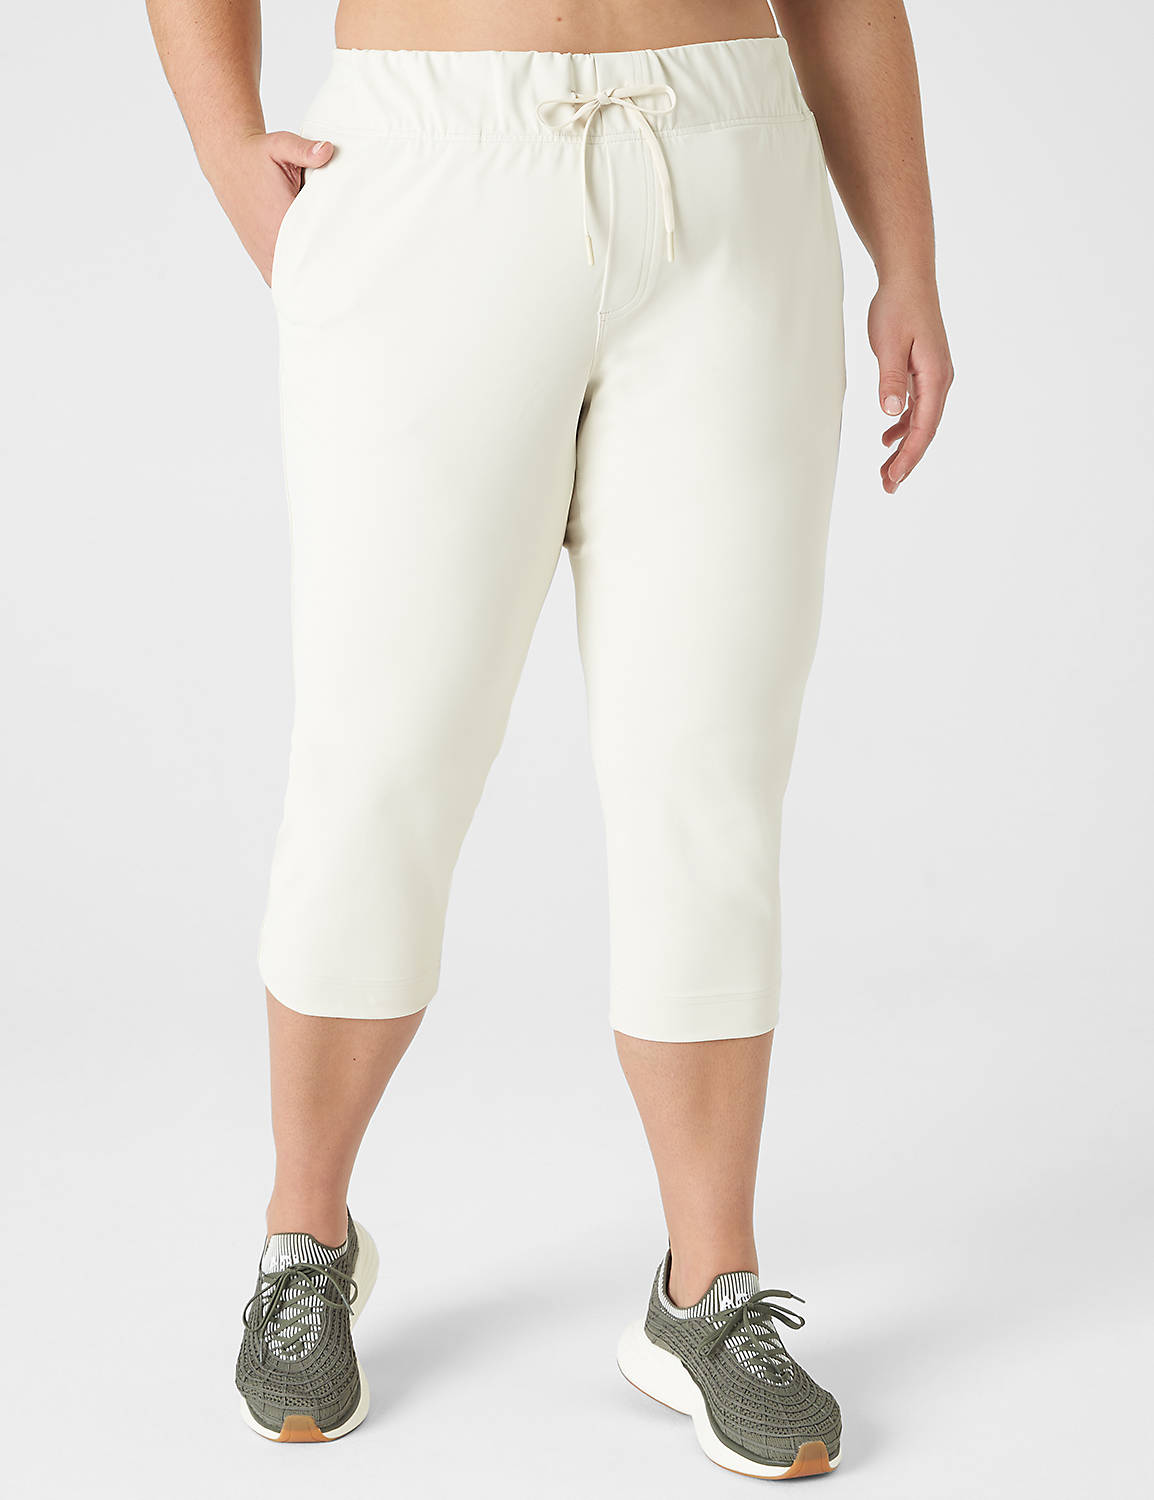 Livi Mid Rise Knit Capri Trouser S Product Image 1